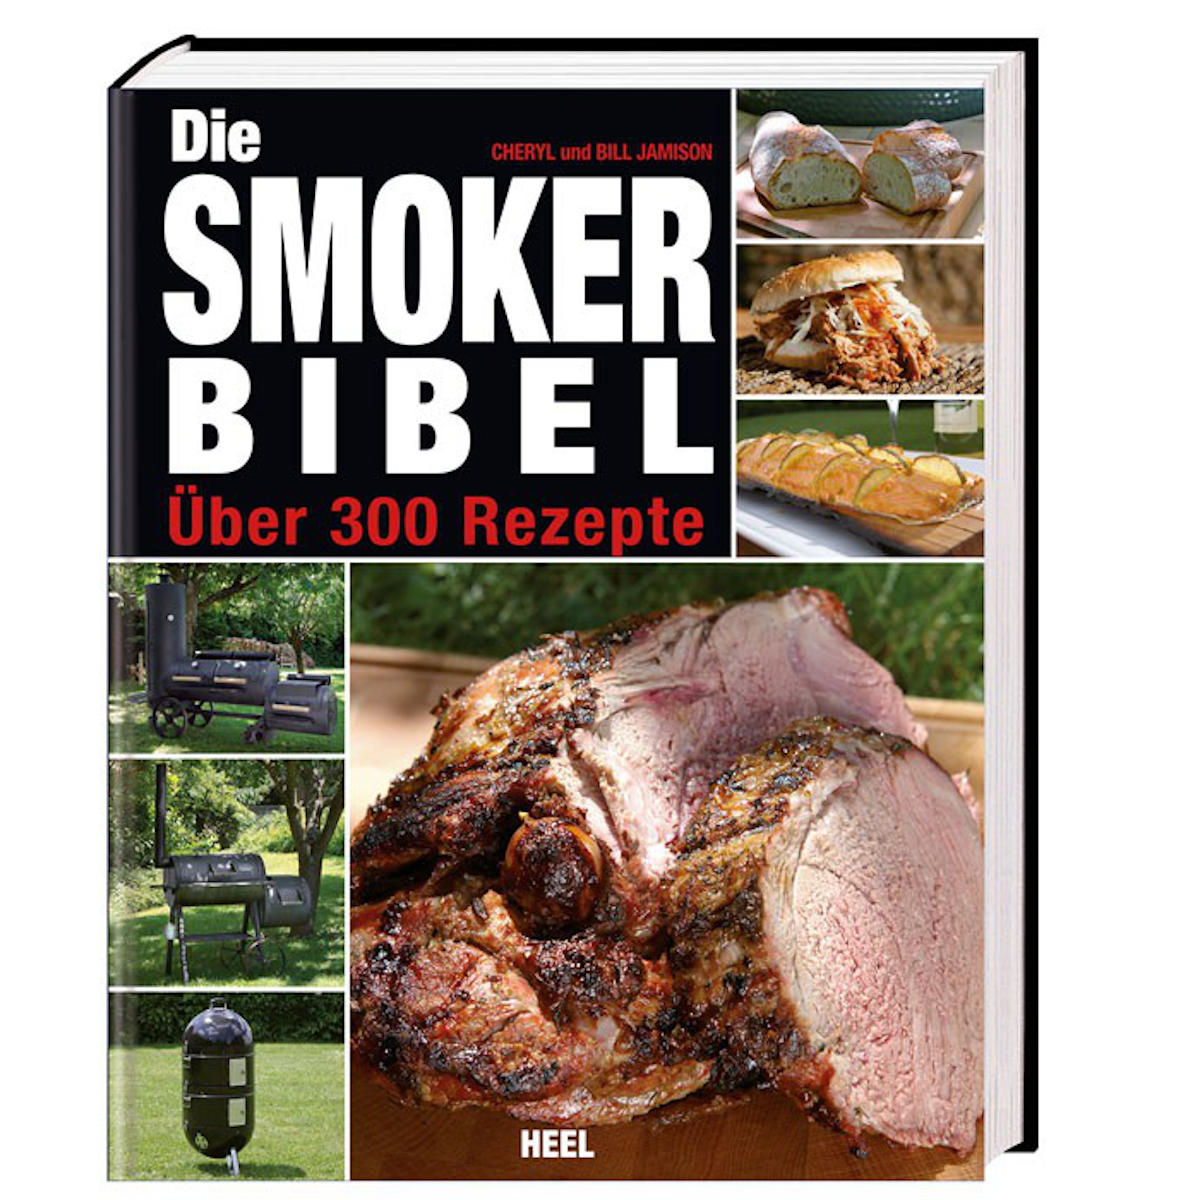 Die Smoker Bibel